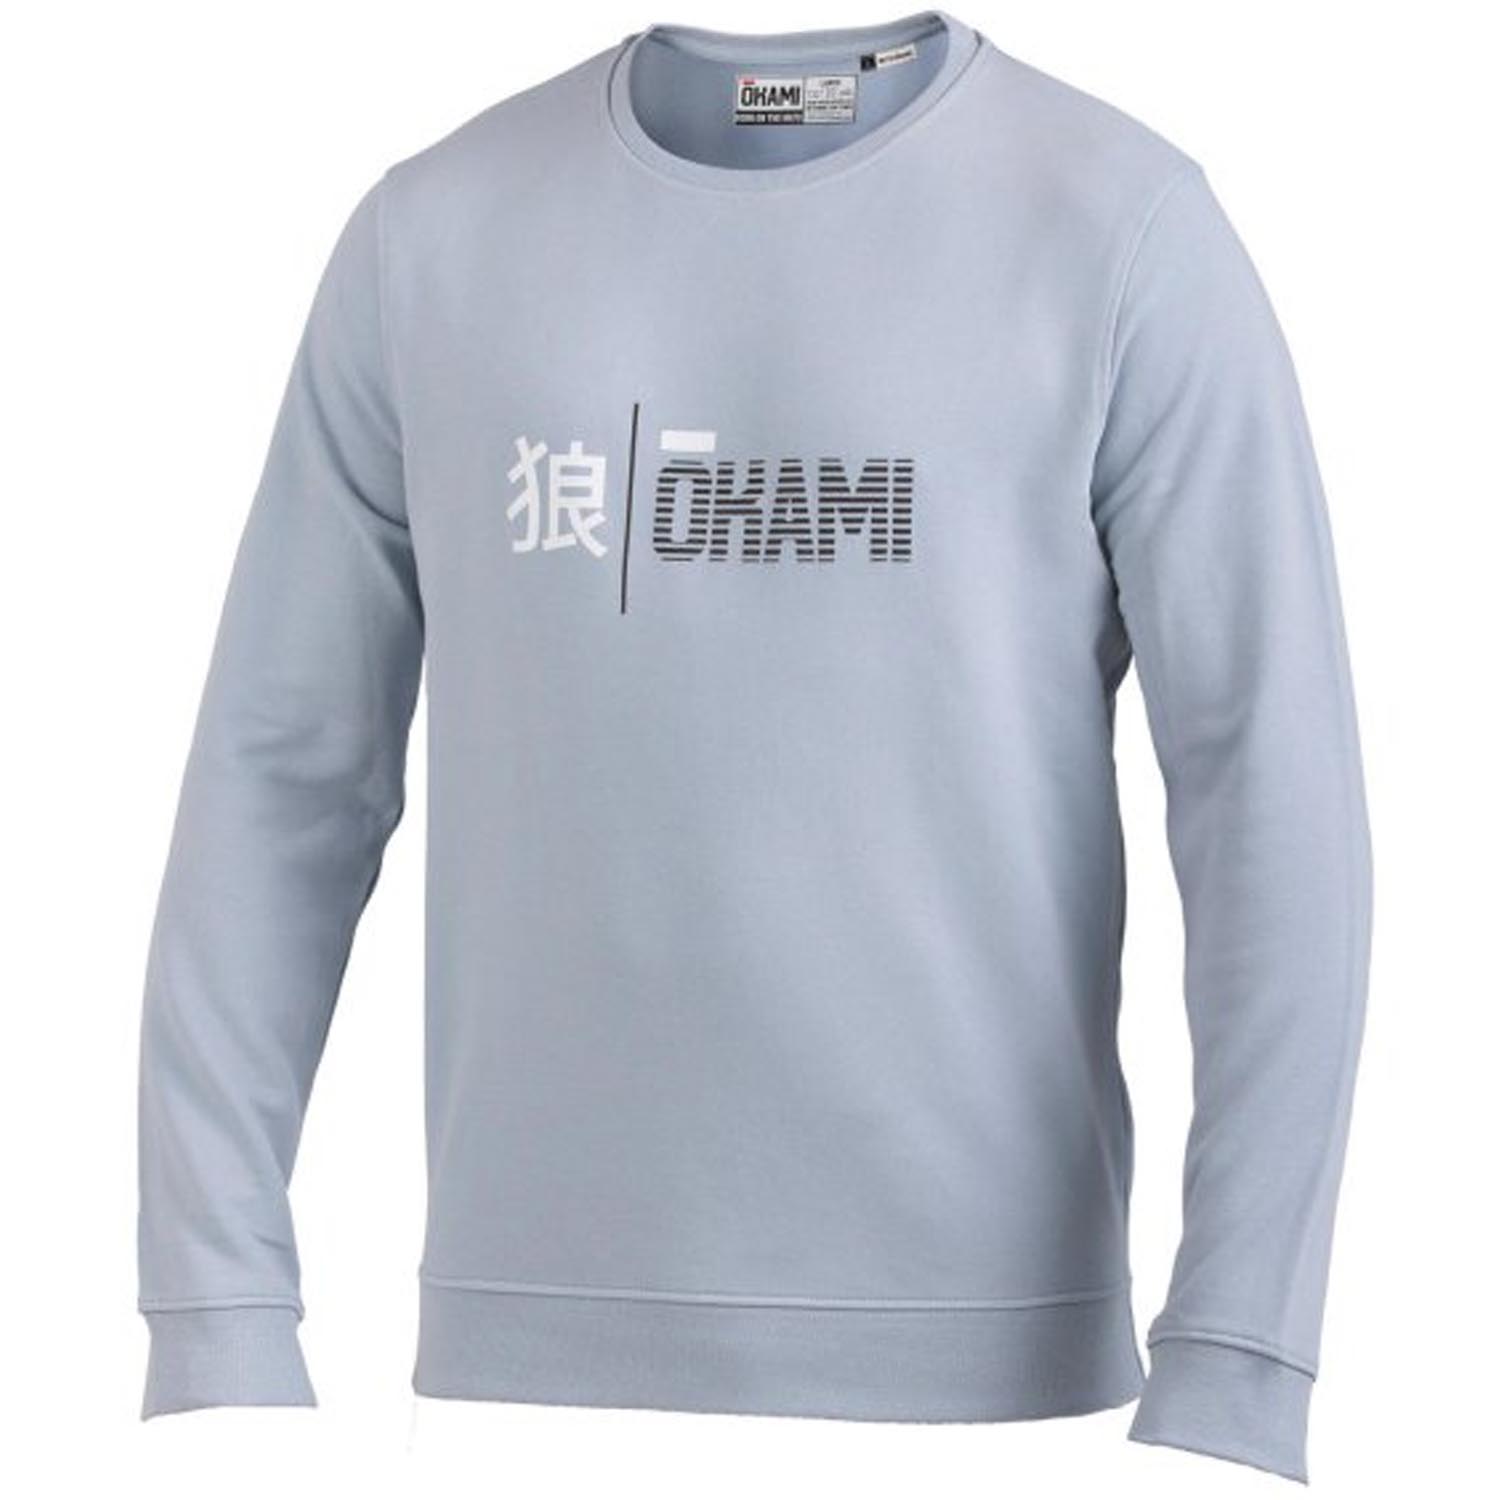 OKAMI Pullover, Organic Kanji Stripes, hellblau, L